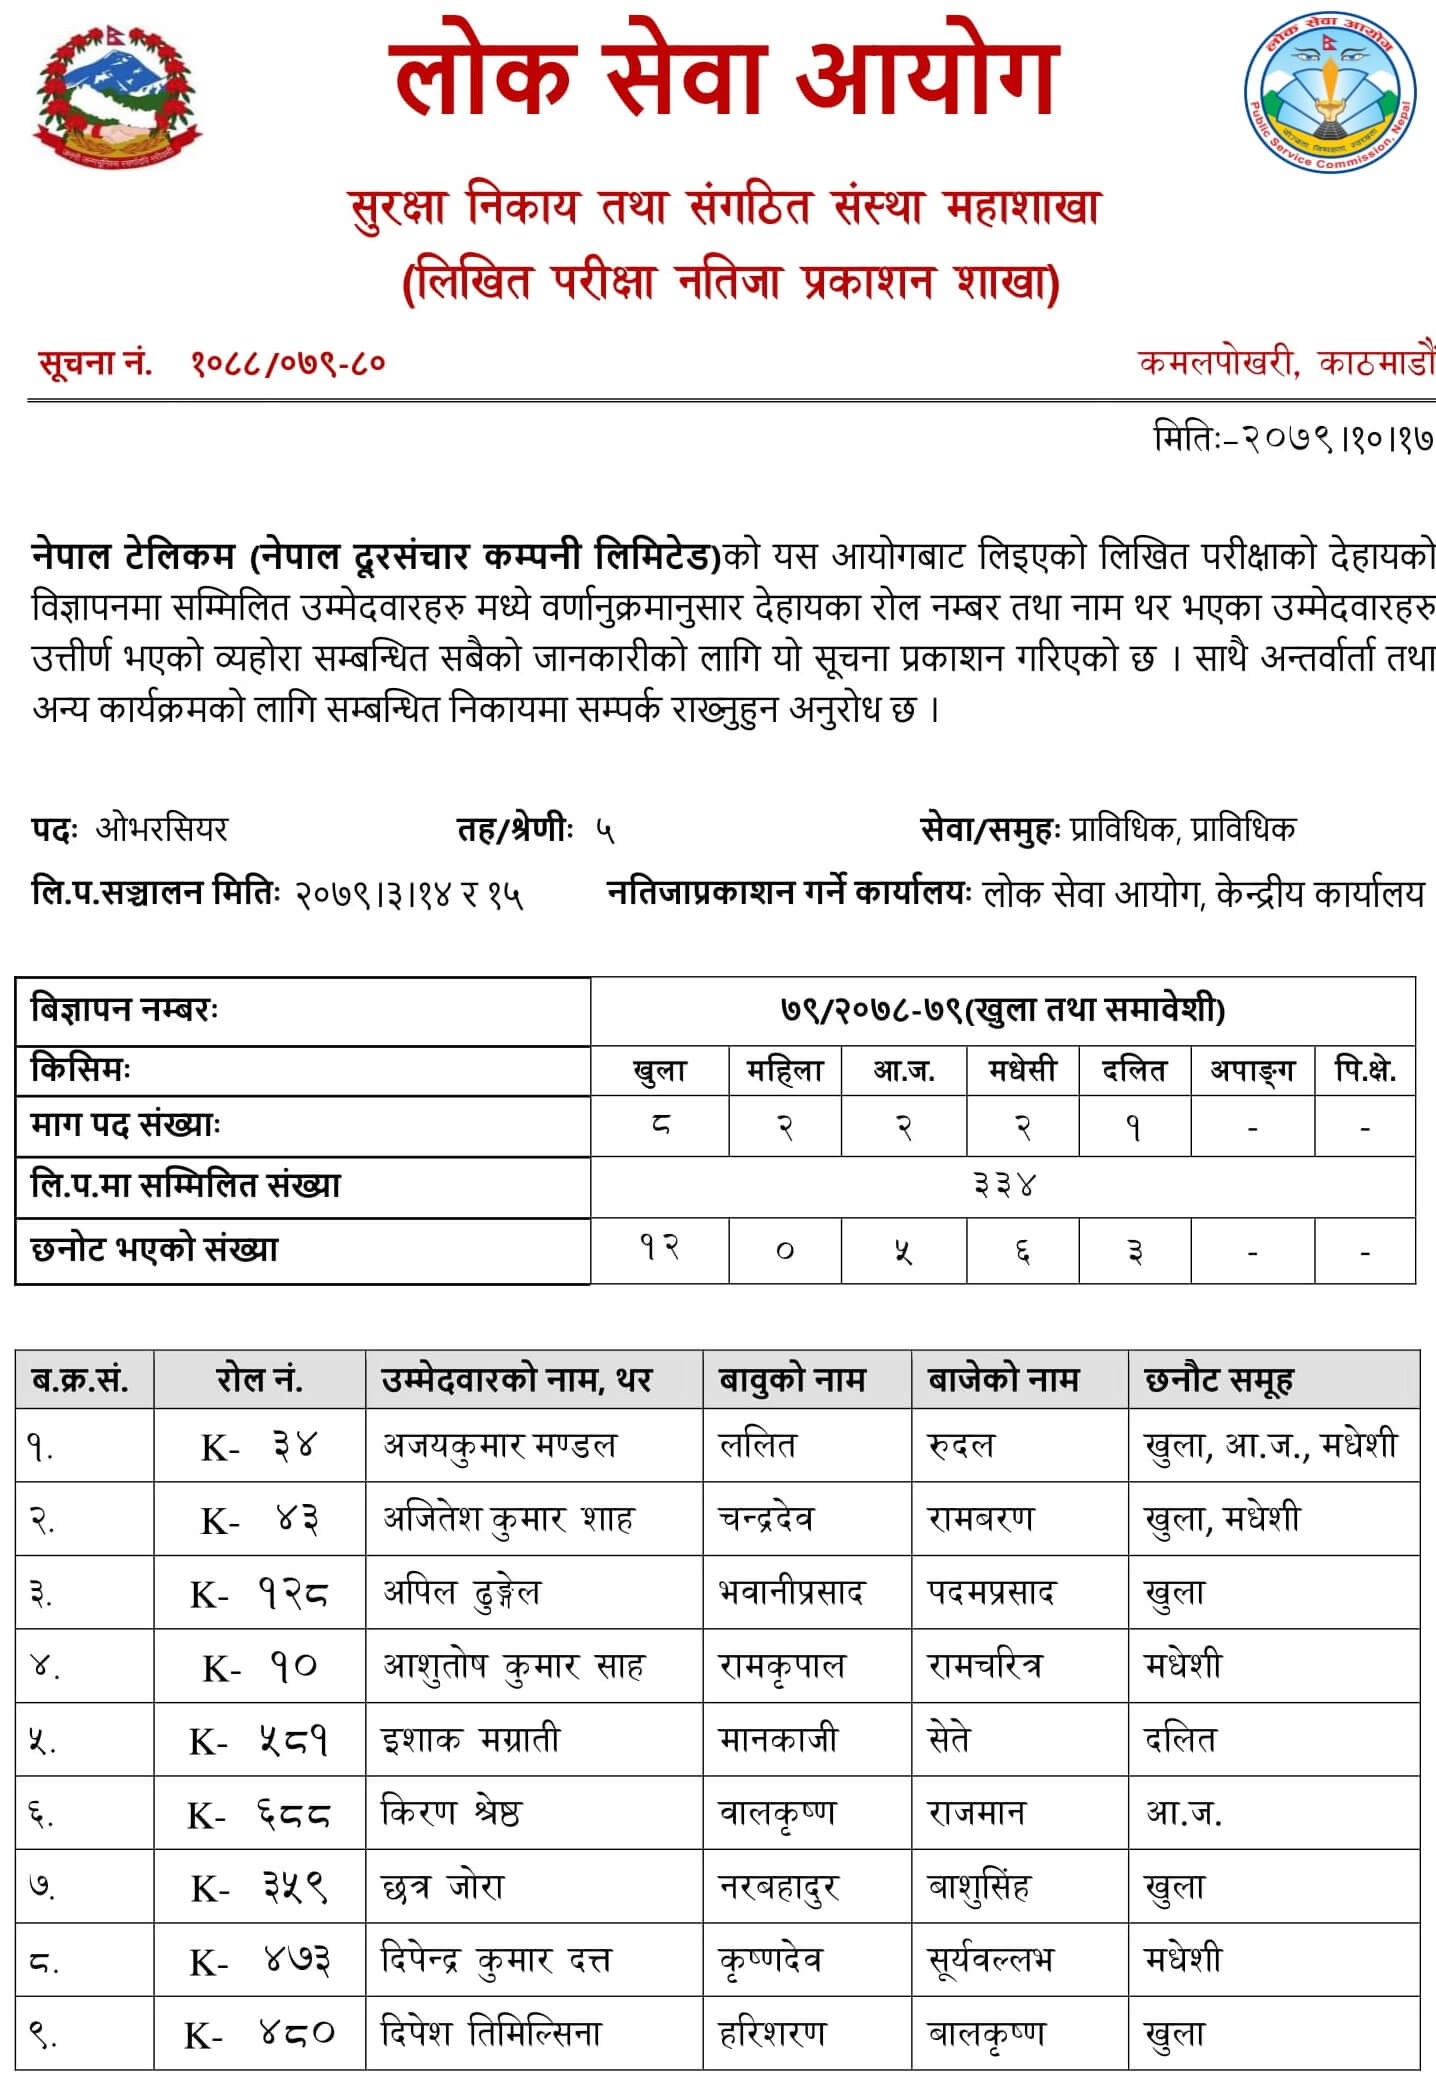 Nepal Telecom Level 5 Overseer Exam Result